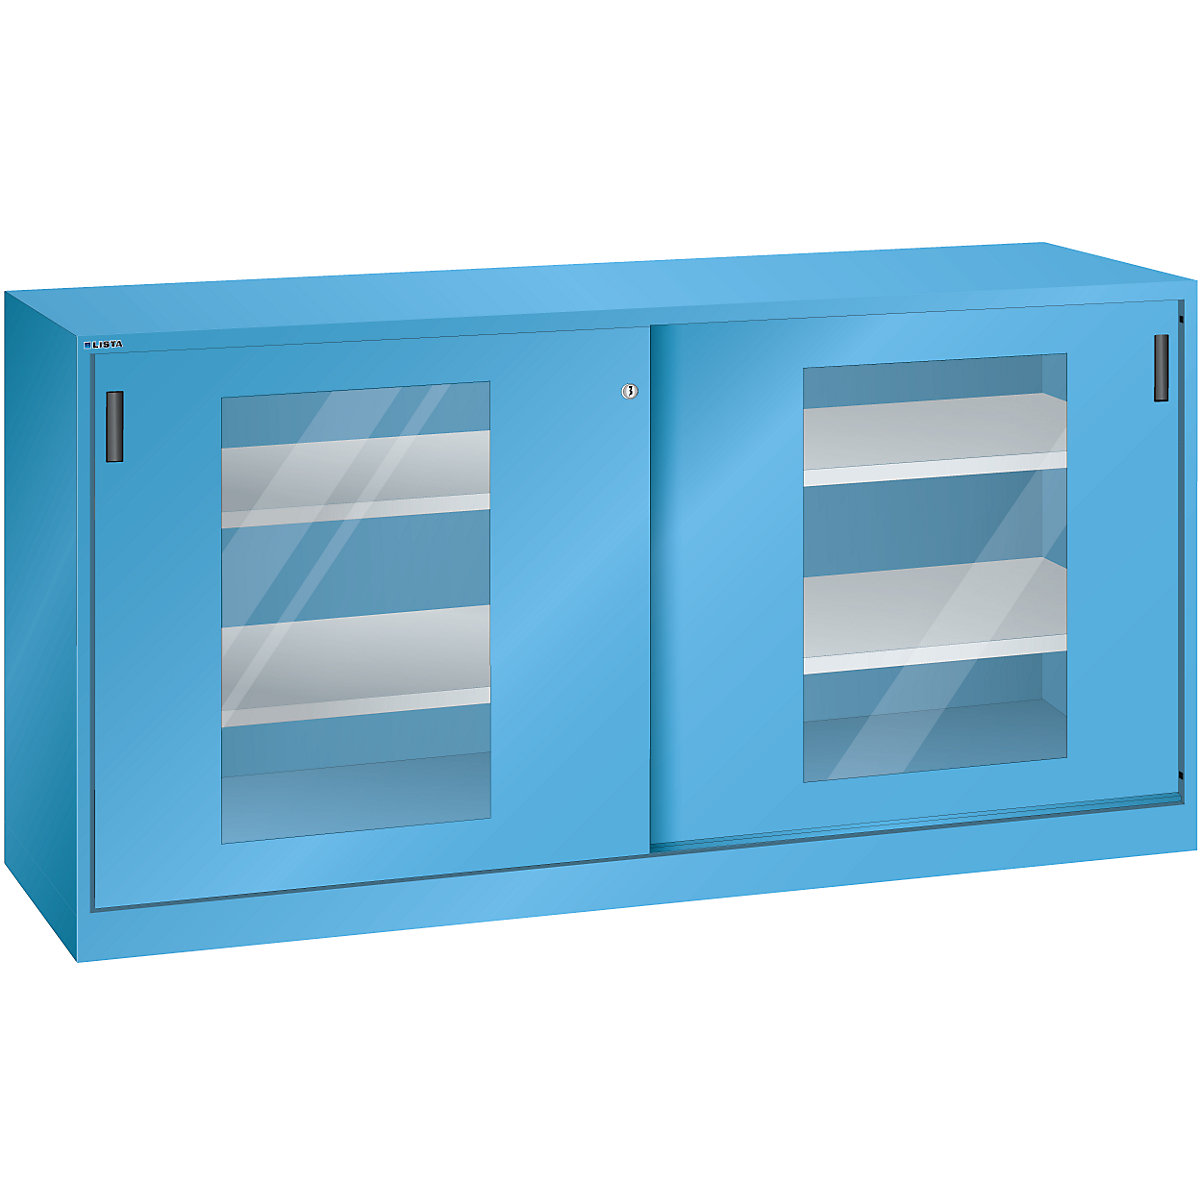 Armário de portas de correr com janelas de visualização – LISTA, 4 prateleiras, azul claro-8